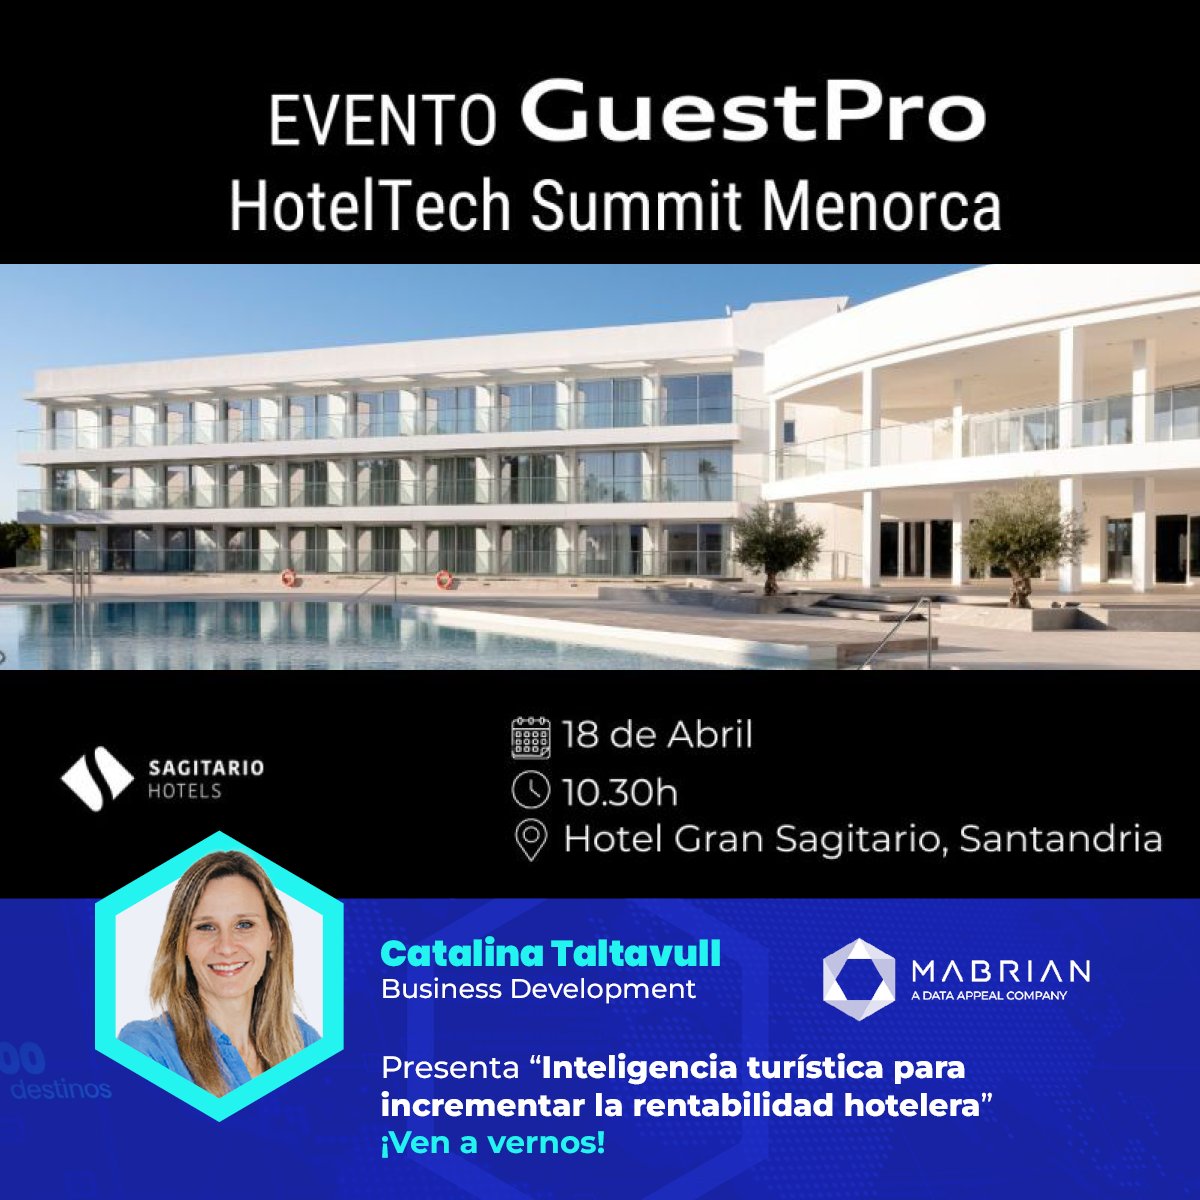 Gracias a @guestpro_com por invitarnos al HotelTech Summit en Menorca! Compartimos con los hoteleros de la isla claves, #datos e info que les ayudarán a afinar sus estrategias de venta directa durante todo el año!
#travel #tourism #dataintelligence #TravelTechnology #Mabrian